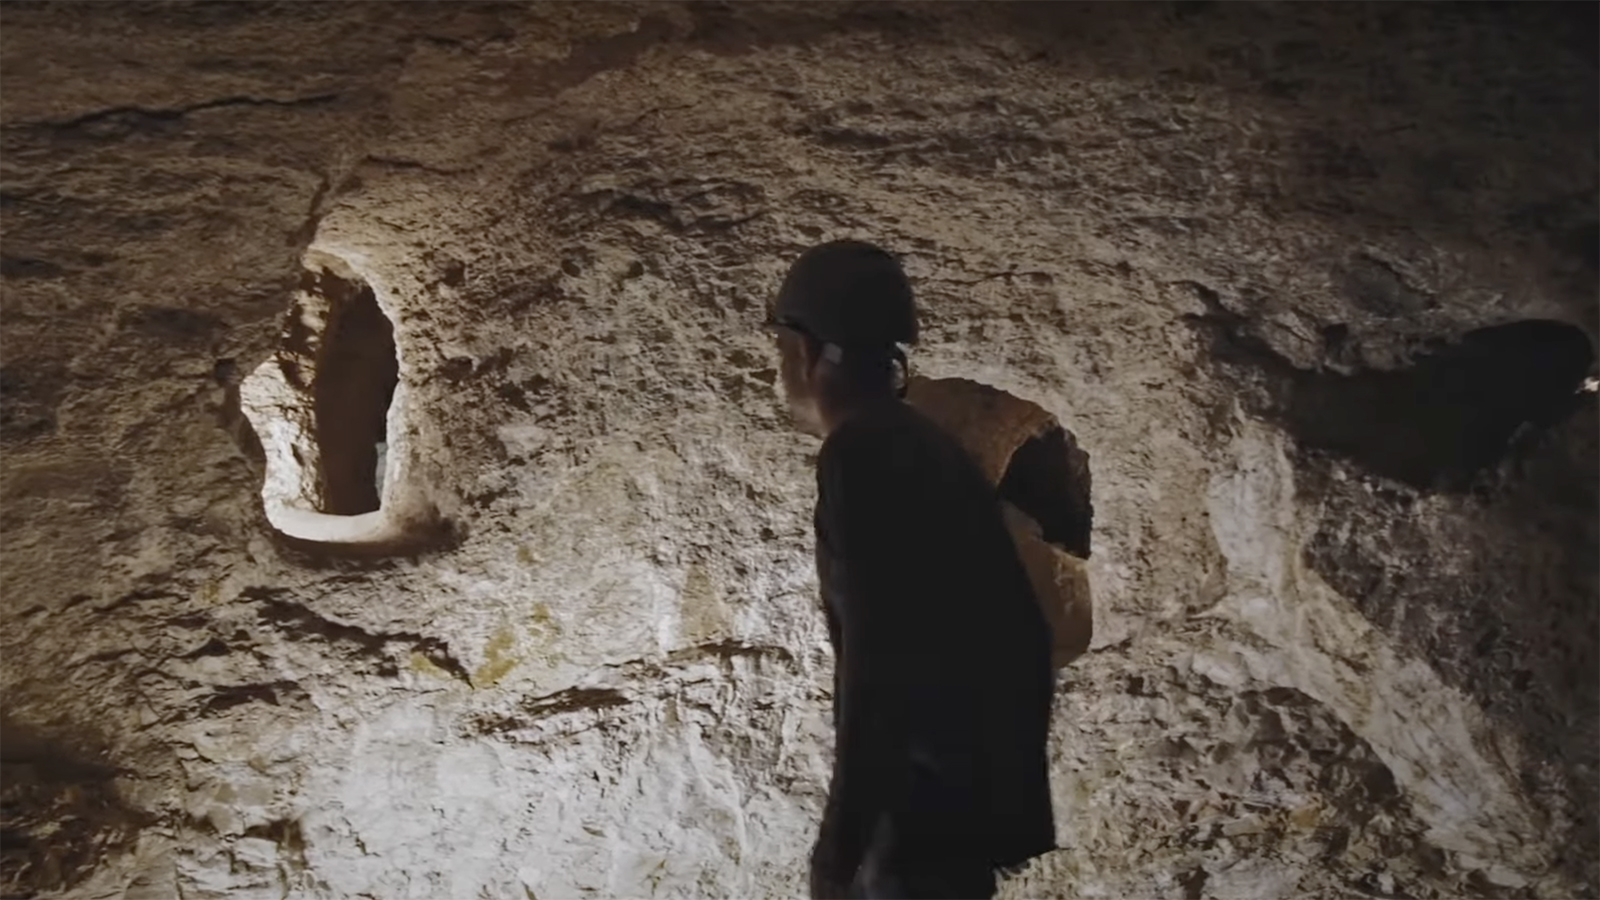 <p>Недалеко от&nbsp;Галилейского моря археологи обнаружили систему подземных тоннелей эпохи антиримского восстания&nbsp;Бар-Кохбы</p>